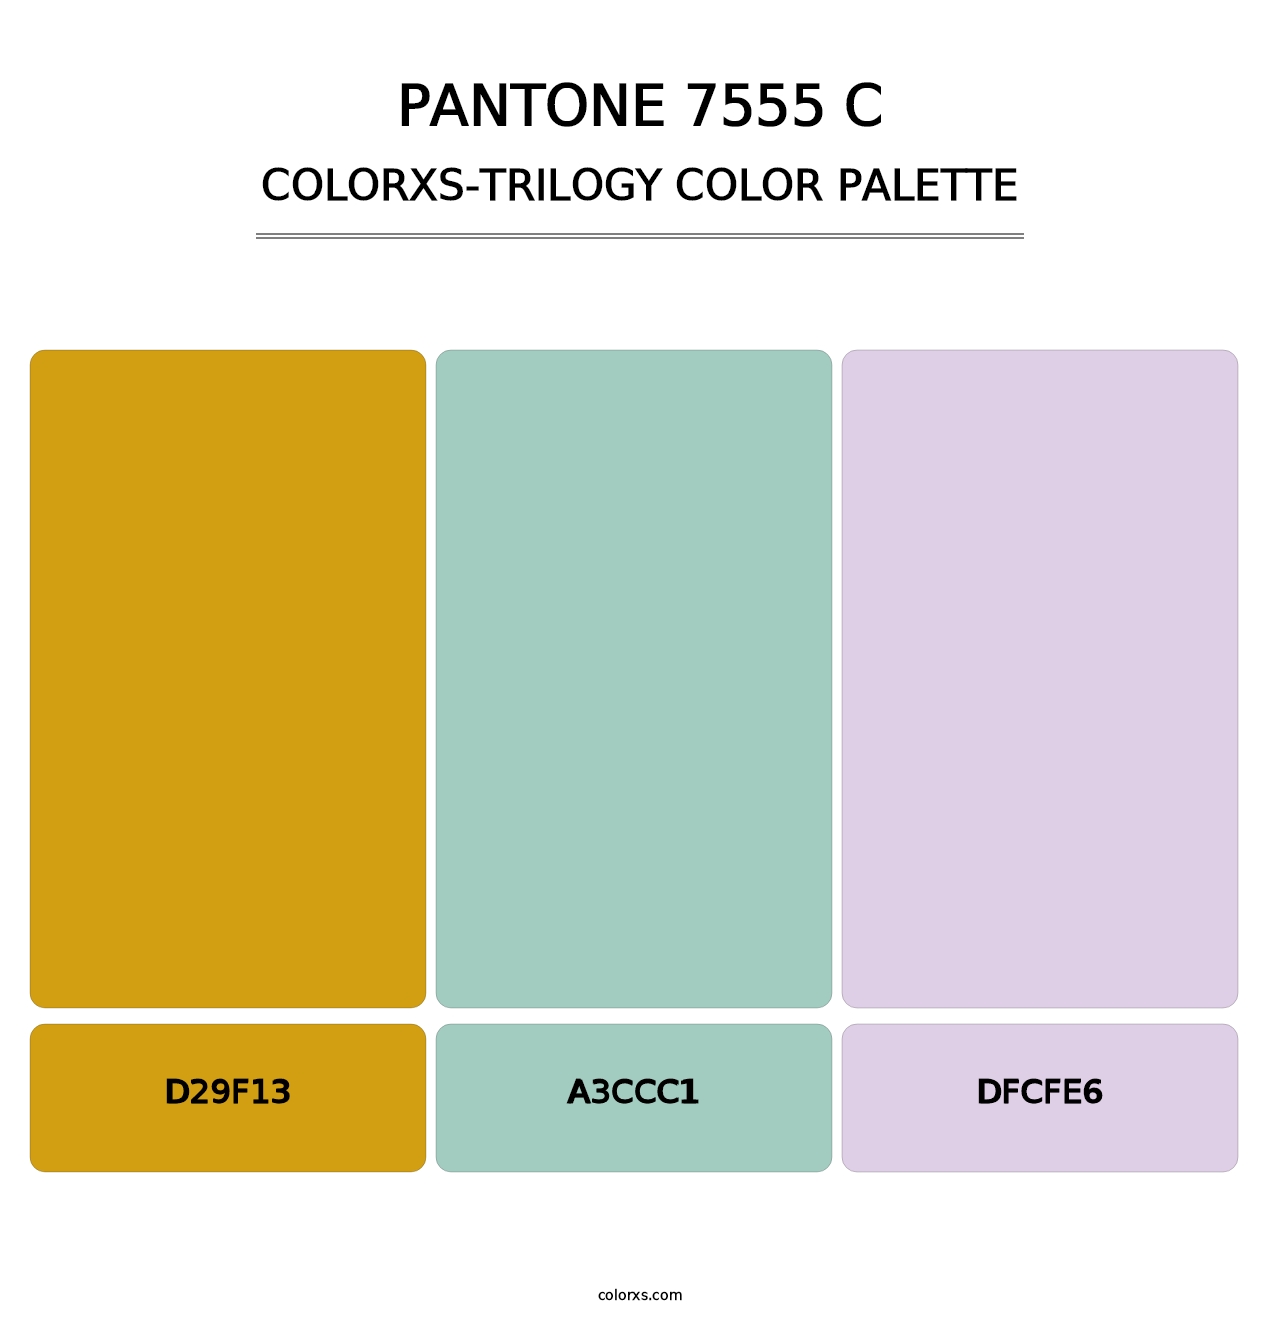 PANTONE 7555 C - Colorxs Trilogy Palette